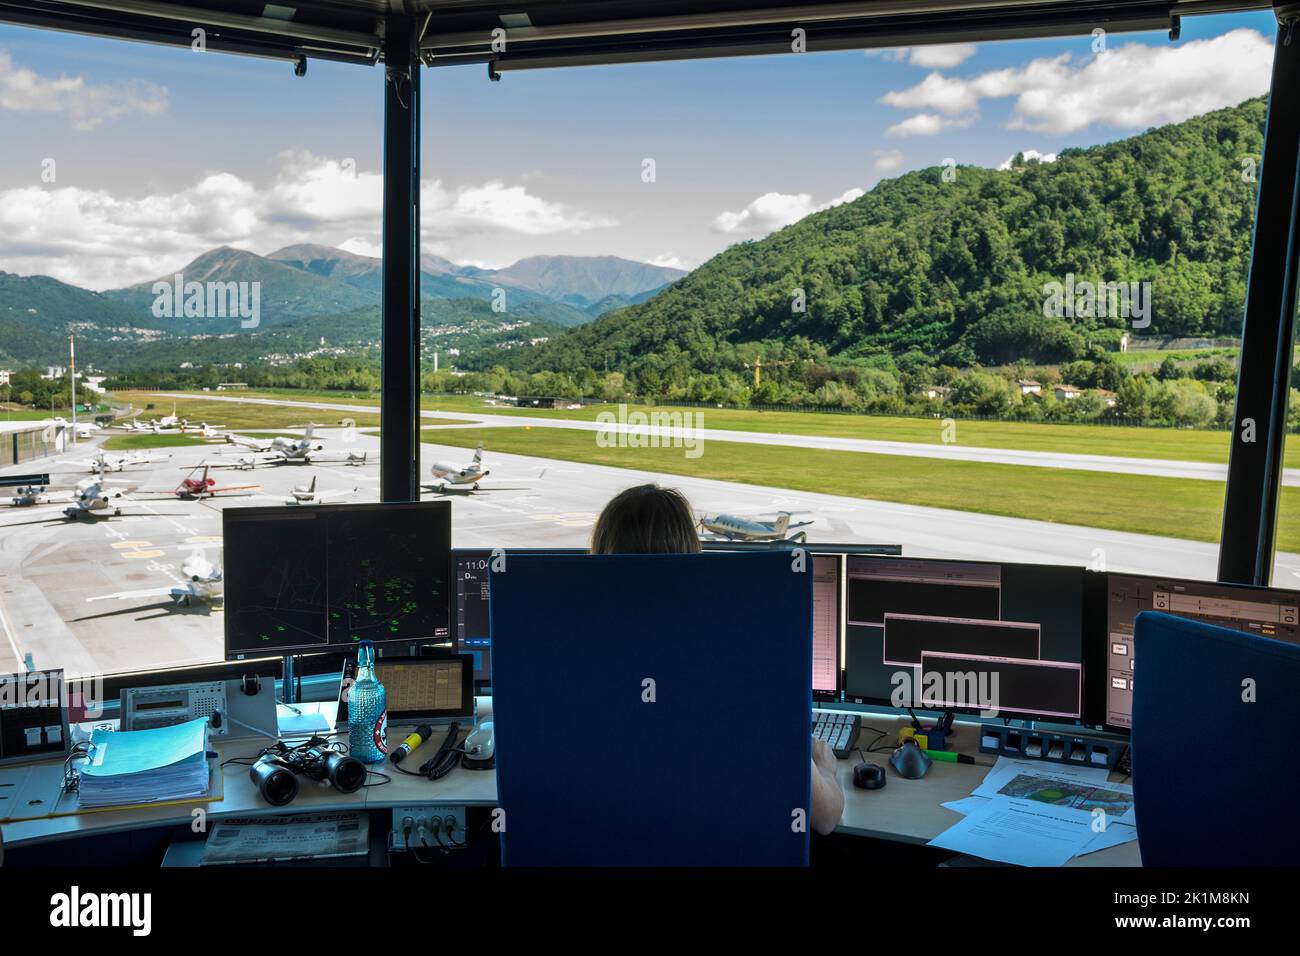 Suisse, Canton du Tessin, Lugano, aéroport d'Agno, tour de contrôle Banque D'Images